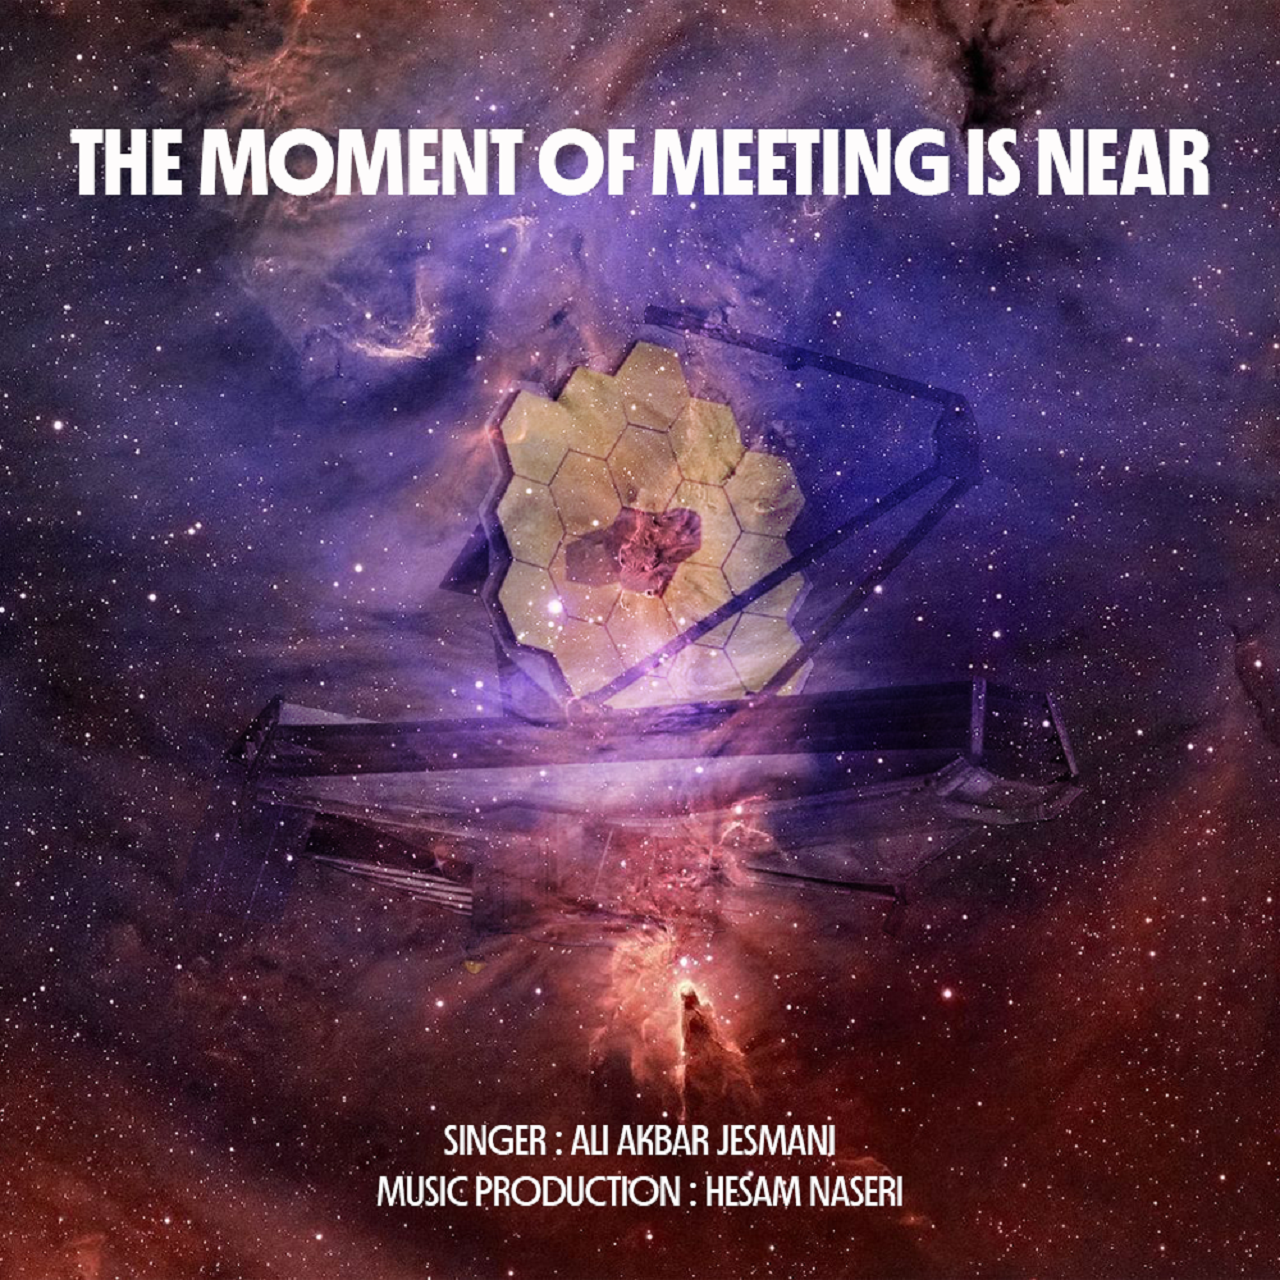  دانلود آهنگ جدید علی اکبر جسمانی - لحظه دیدار نزدیک است | Download New Music By Ali Akbar Jesmani - The Moment Of Meeting Is Near